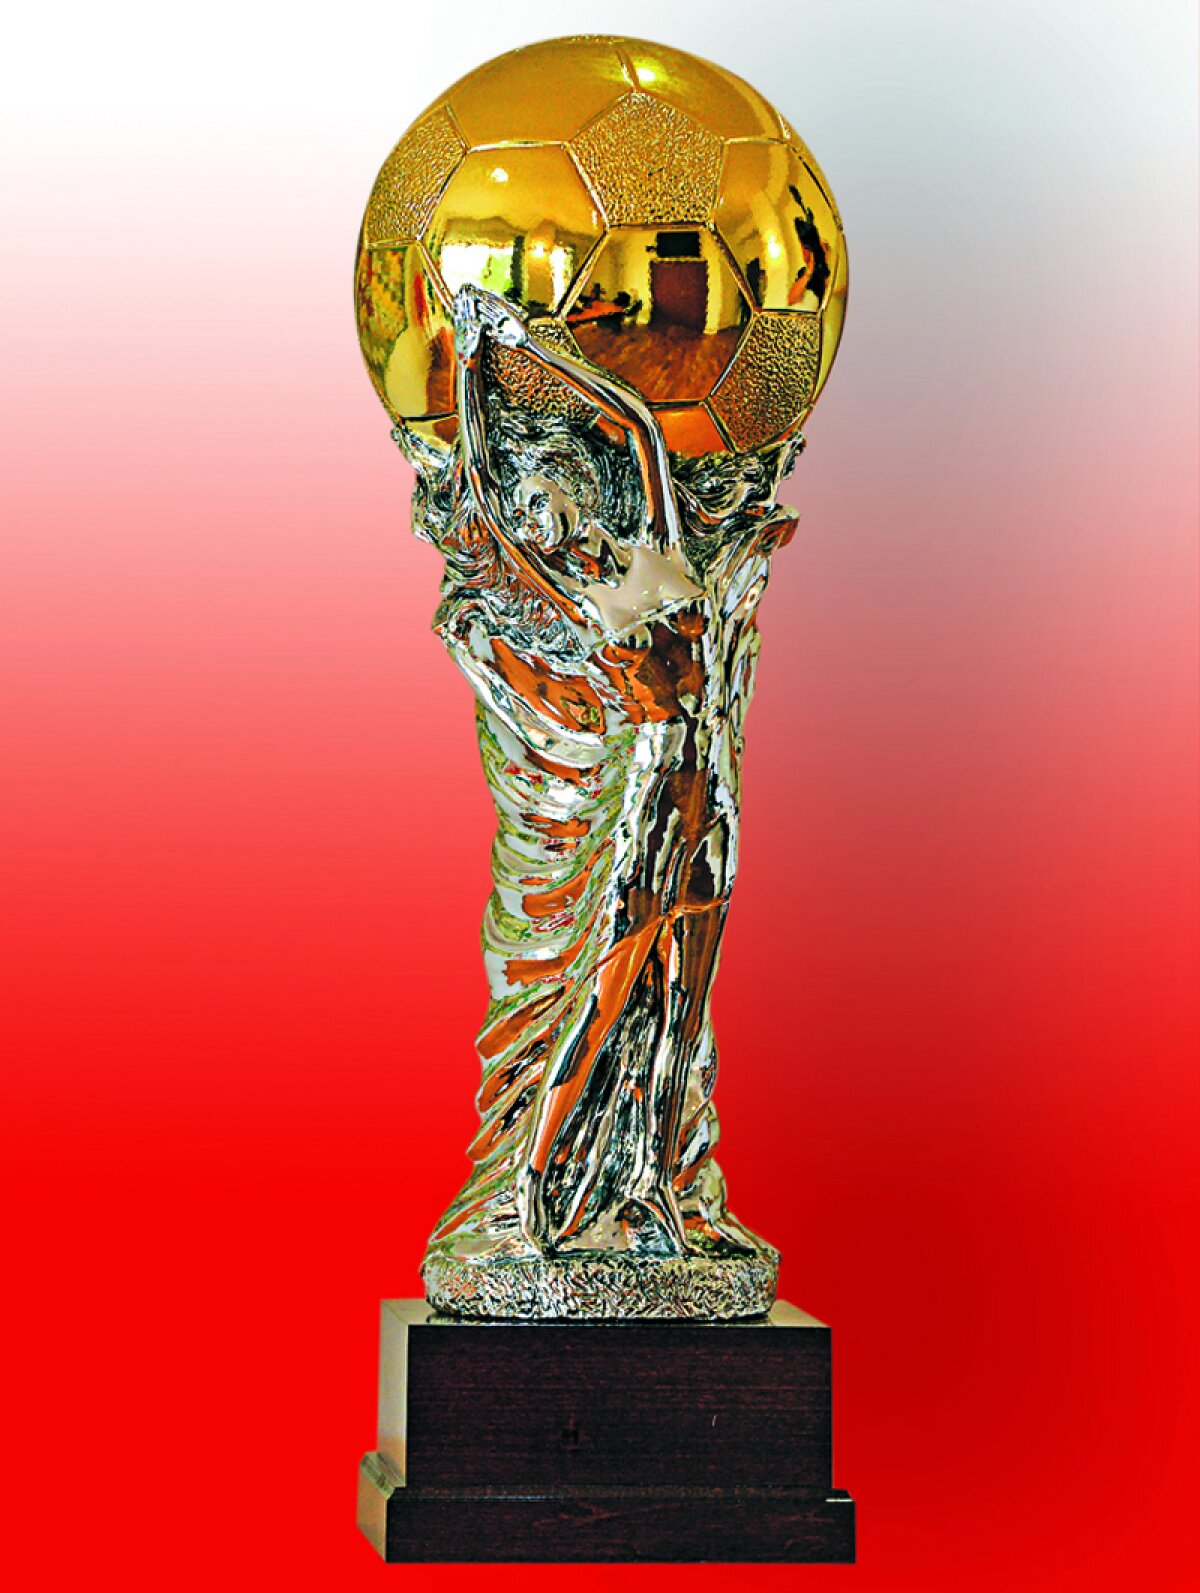 EXCLUSIV Gazeta vă prezintă în premieră cum va arăta trofeul Ligii 1 » O fată şi o minge poleită cu aur